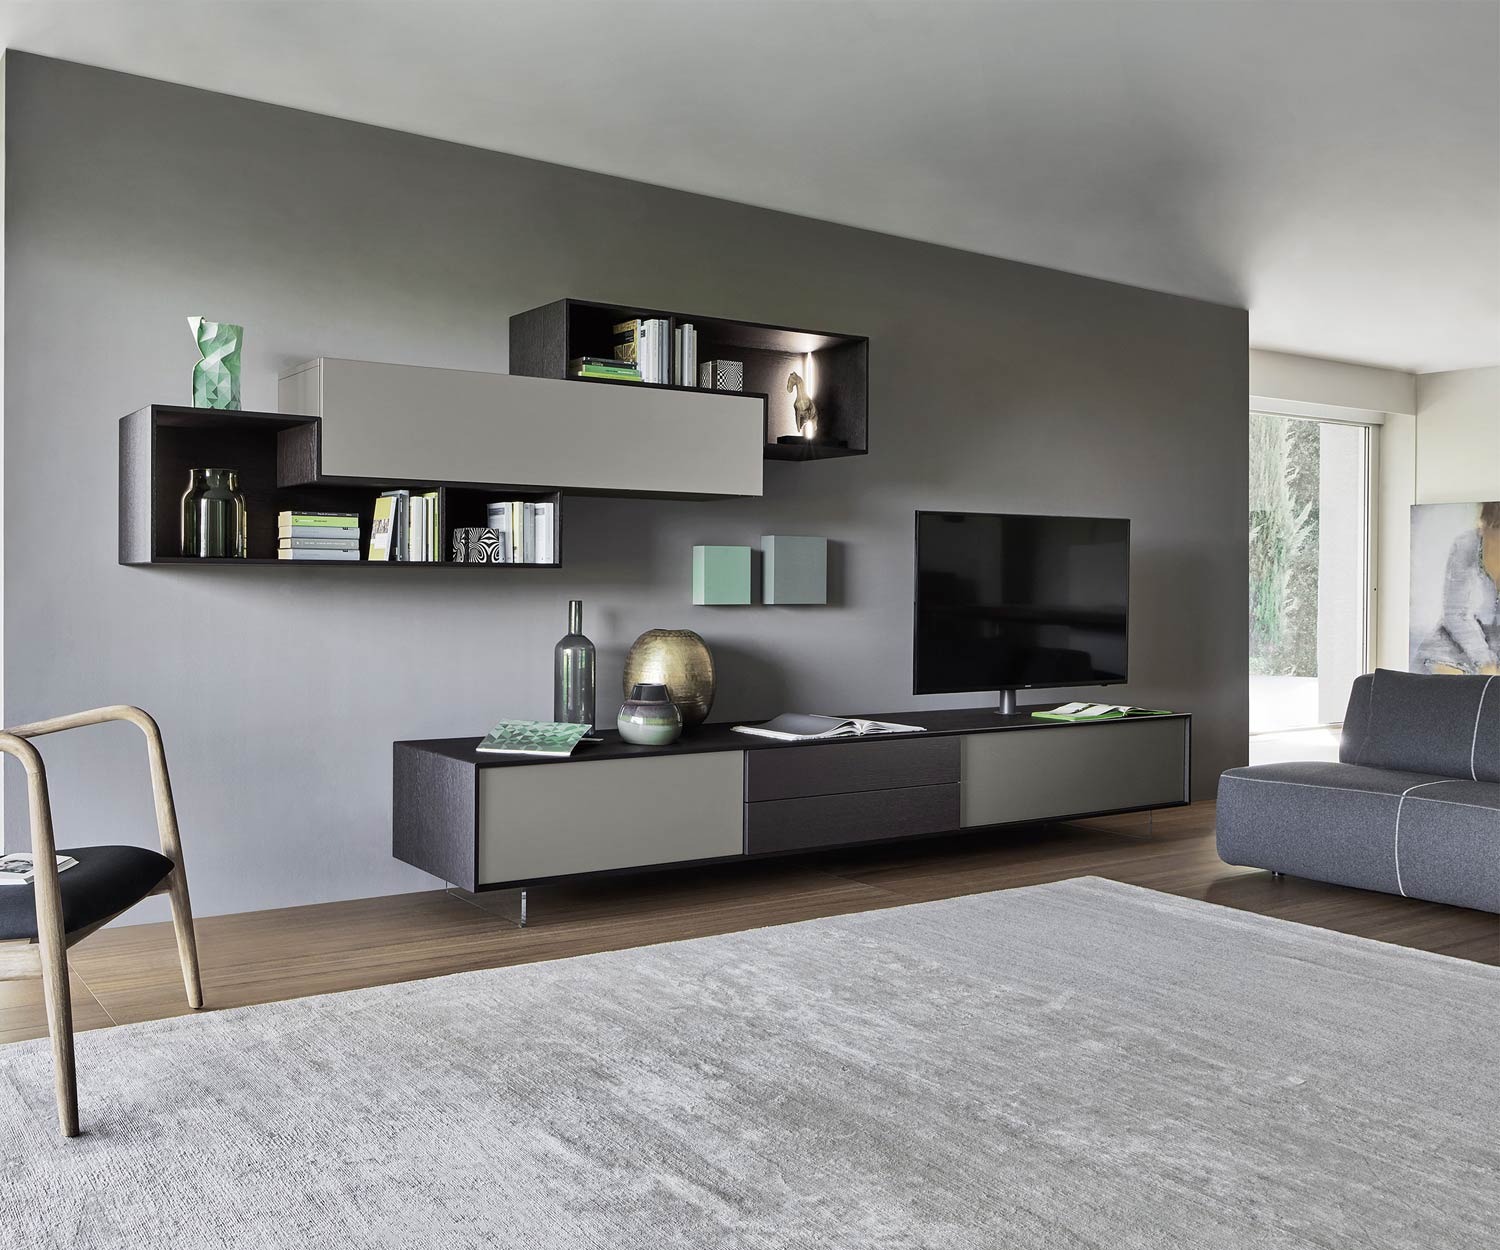 Exclusief Livitalia Design wandmeubel C18 in grijs met TV-design lowboard met houteffect